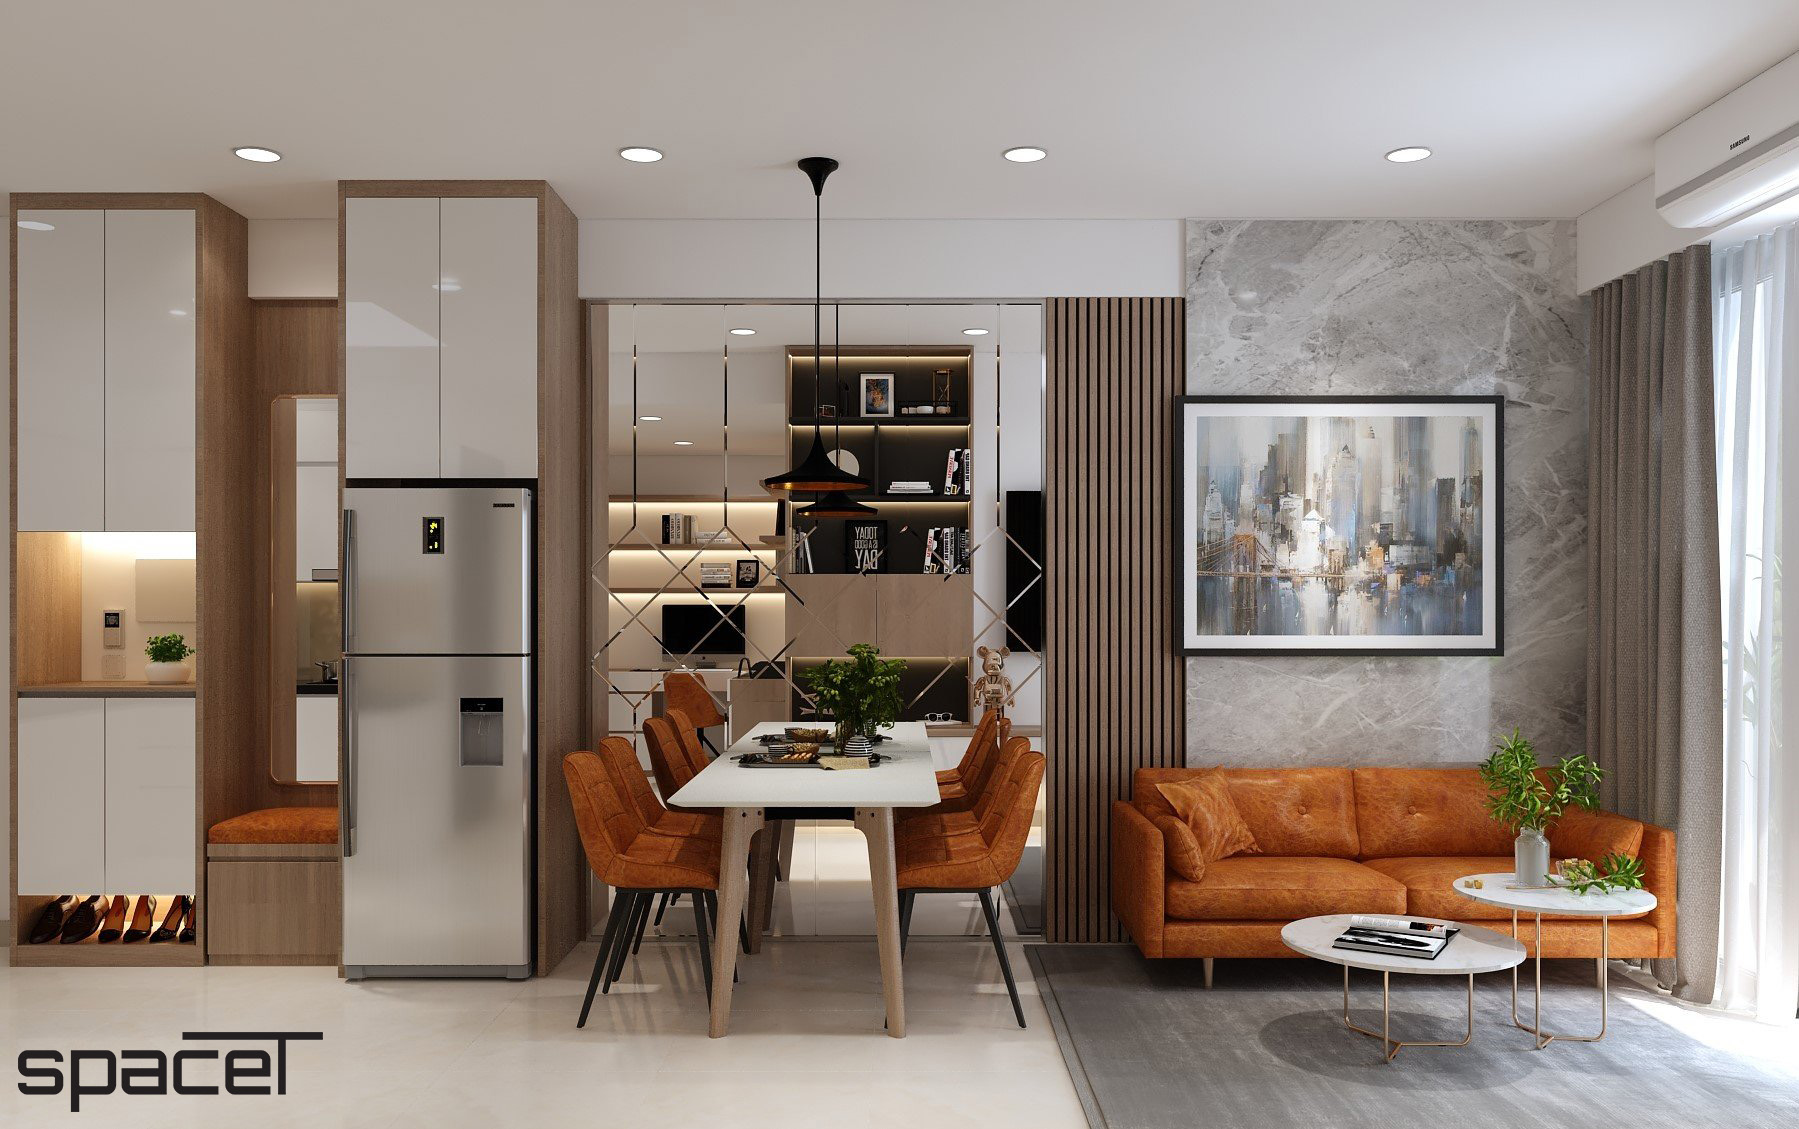 Phòng khách, phòng ăn, phong cách Hiện đại Modern, thiết kế concept nội thất, căn hộ chung cư Ricca